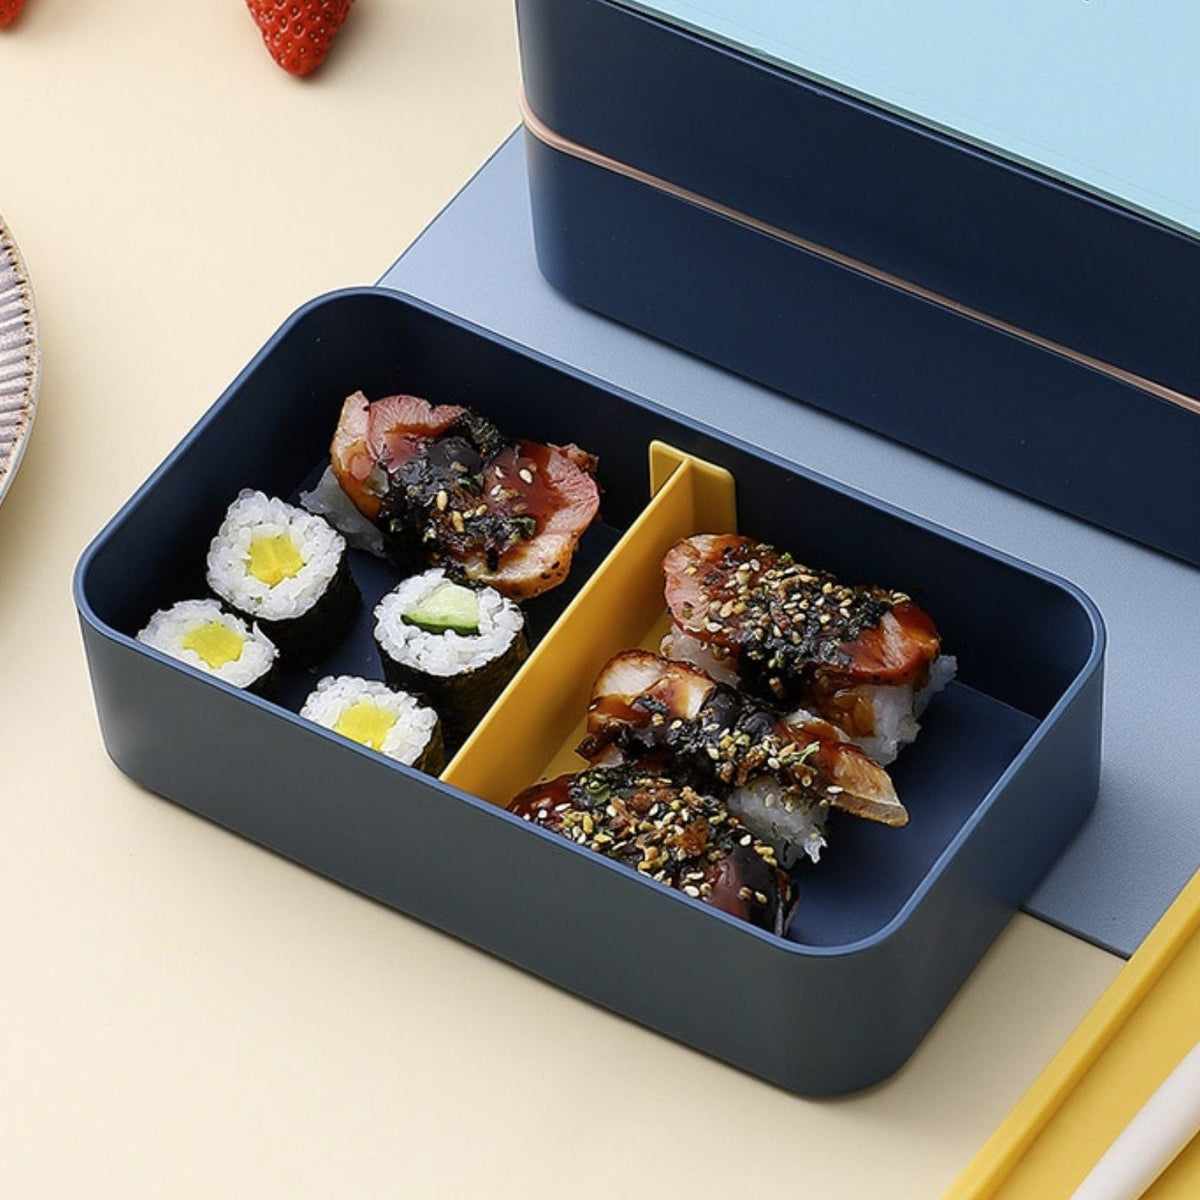 Lunch Box Bento Japonaise Premium + 3 Couverts Solides + 1 Pot À Sauce -  1200ml - Noir Mat UMAMI Pas Cher 